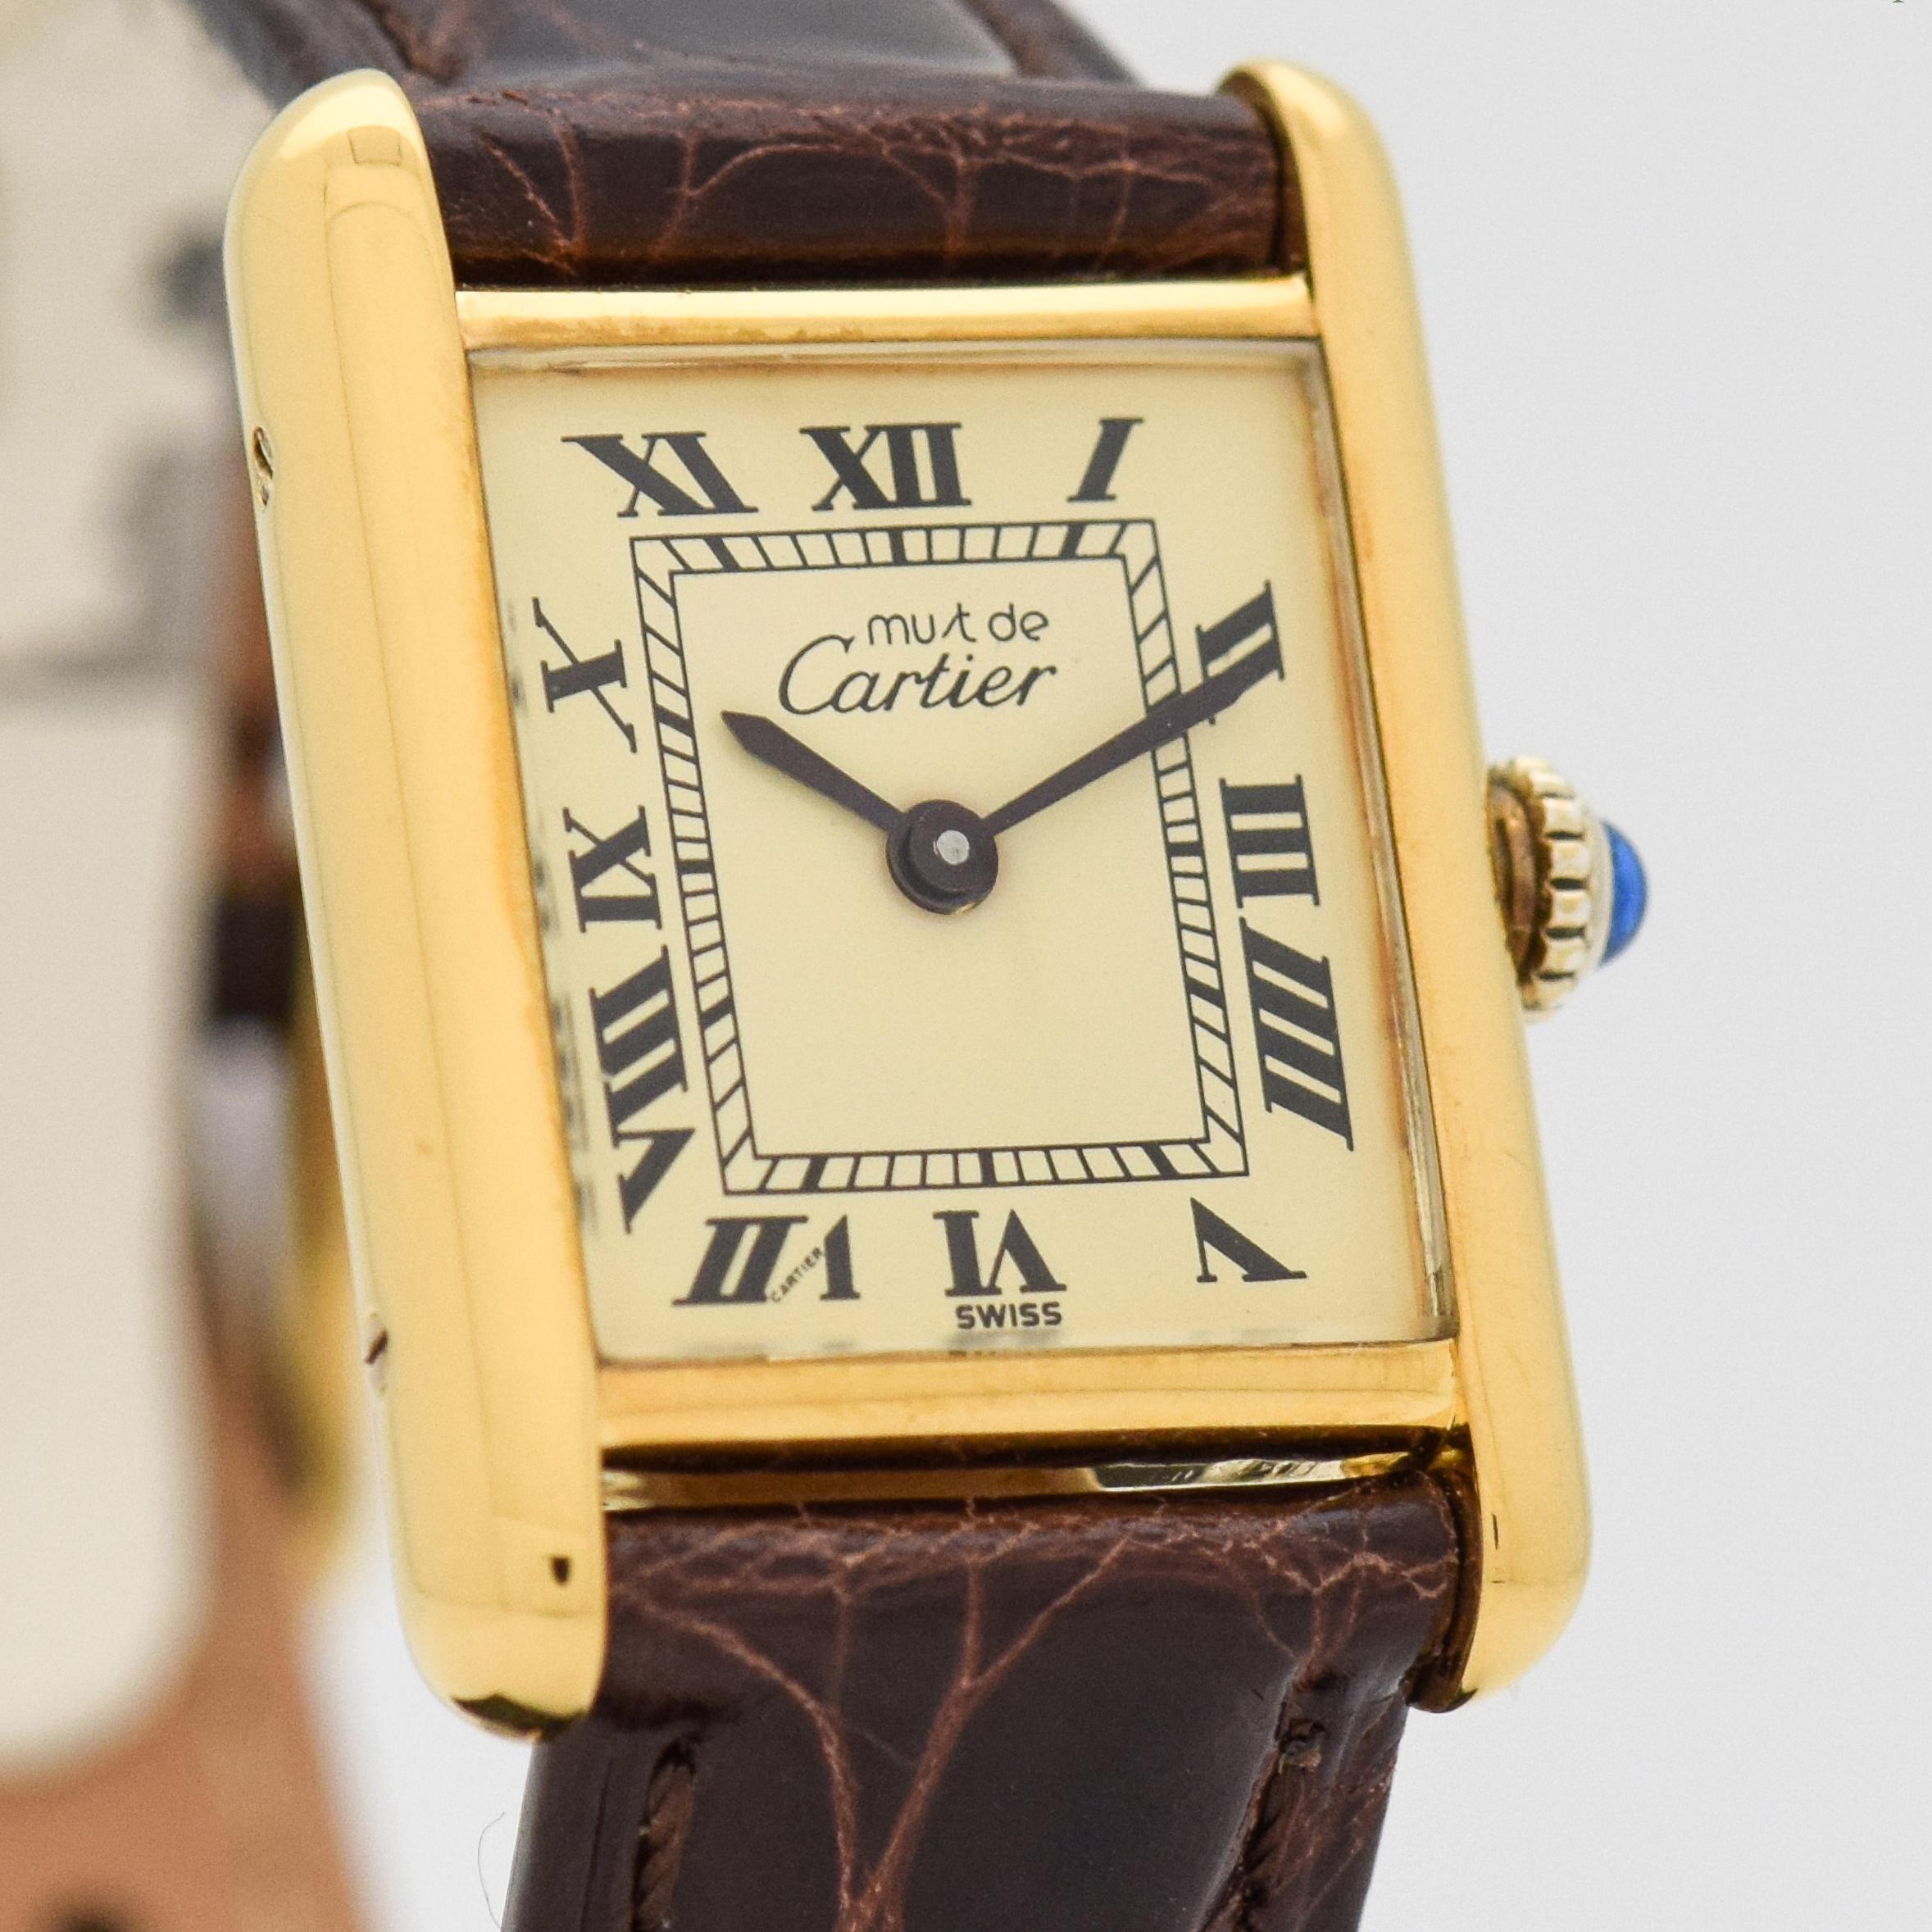 1980's Vintage Cartier Standard Damen Größe Must de Tank 18k Gelbgold vergoldet über Sterling Silber Uhr mit Original Gold / Champagner Zifferblatt mit schwarzen römischen Ziffern. 20mm x 27mm Stollen zu Stollen (0,79 in. x 1,06 in.) - 17 Juwelen,